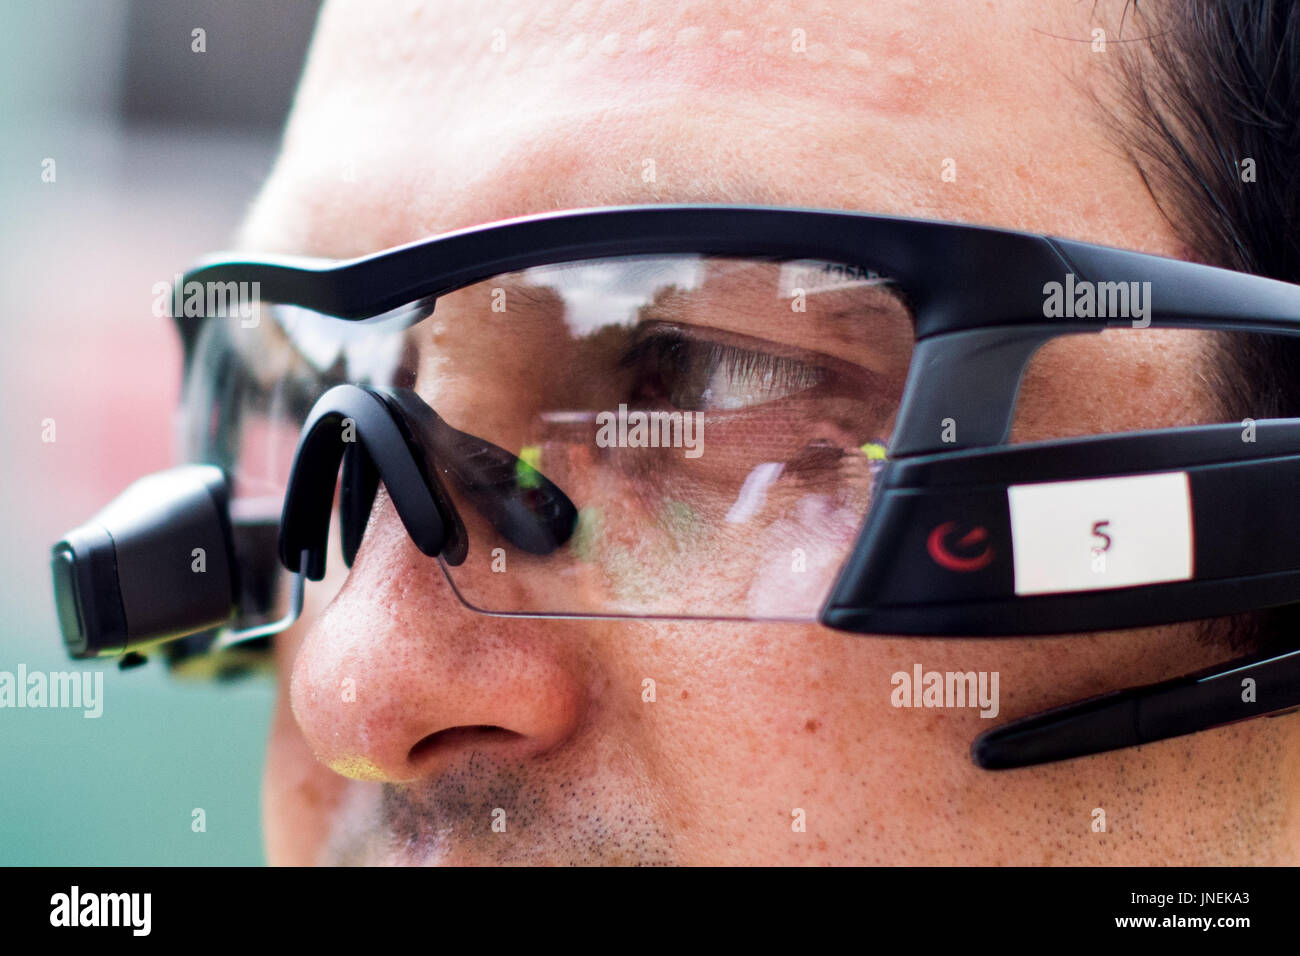 Aachen, Deutschland. 30. Juli 2017. Dpatop - ein Notfall Medic trägt Brille  Computer während einer Katastrophe Drill in Aachen, Deutschland, 30. Juli  2017. Wissenschaftler wollen die Brille zu verwenden, um die erste